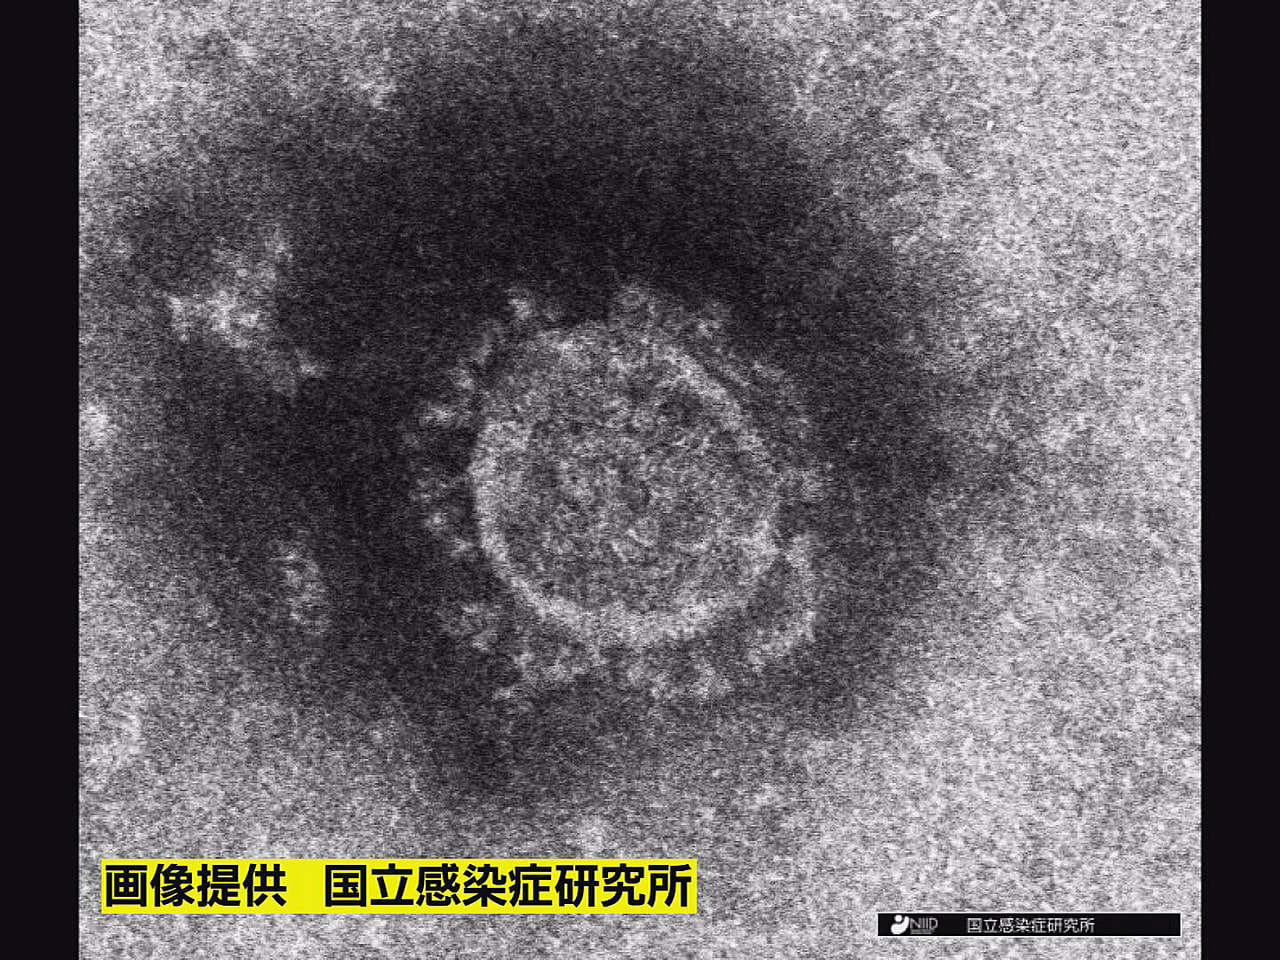 岐阜県は５日、新型コロナウイルスの新規感染者が２４９人確認されたと発表しました。...